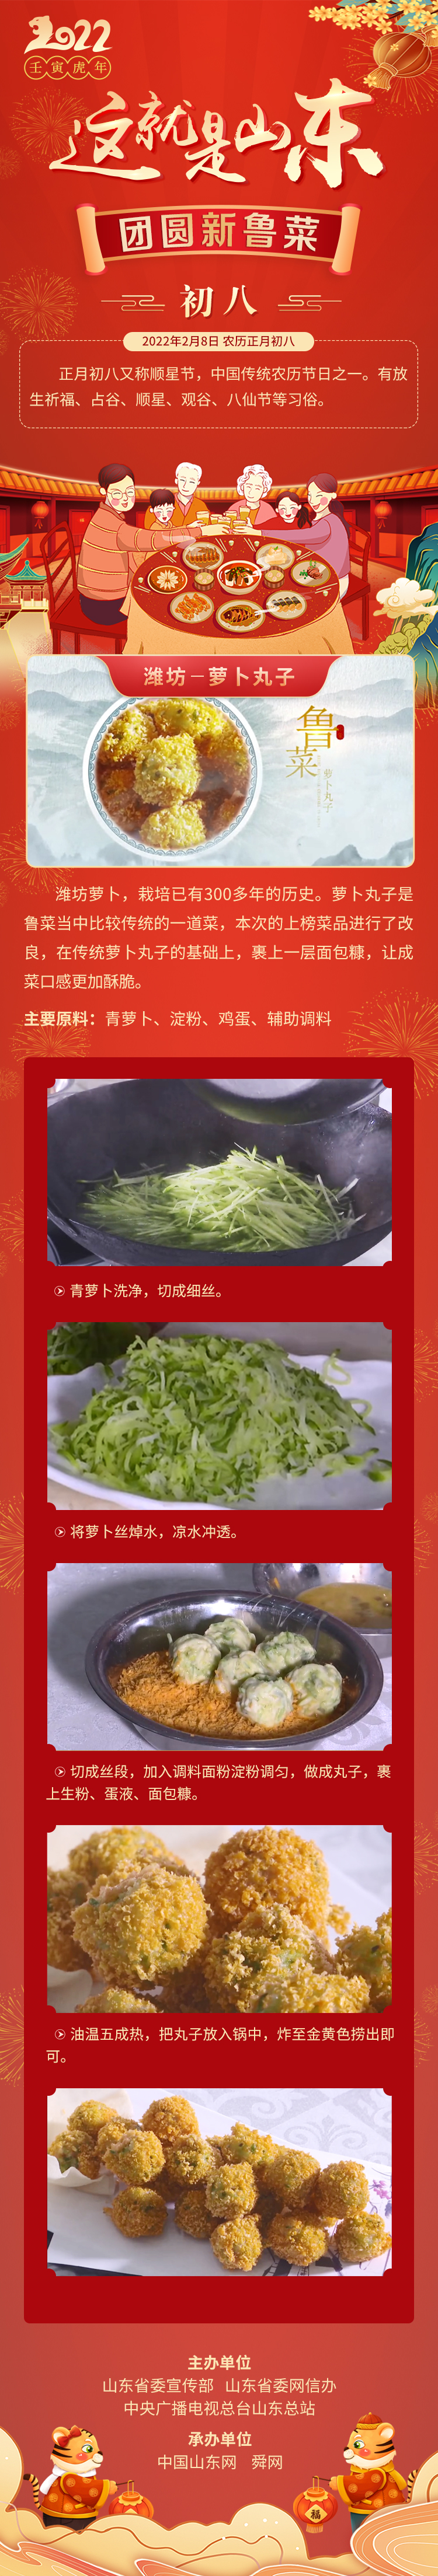 这就是山东·团圆新鲁菜——潍坊-萝卜丸子